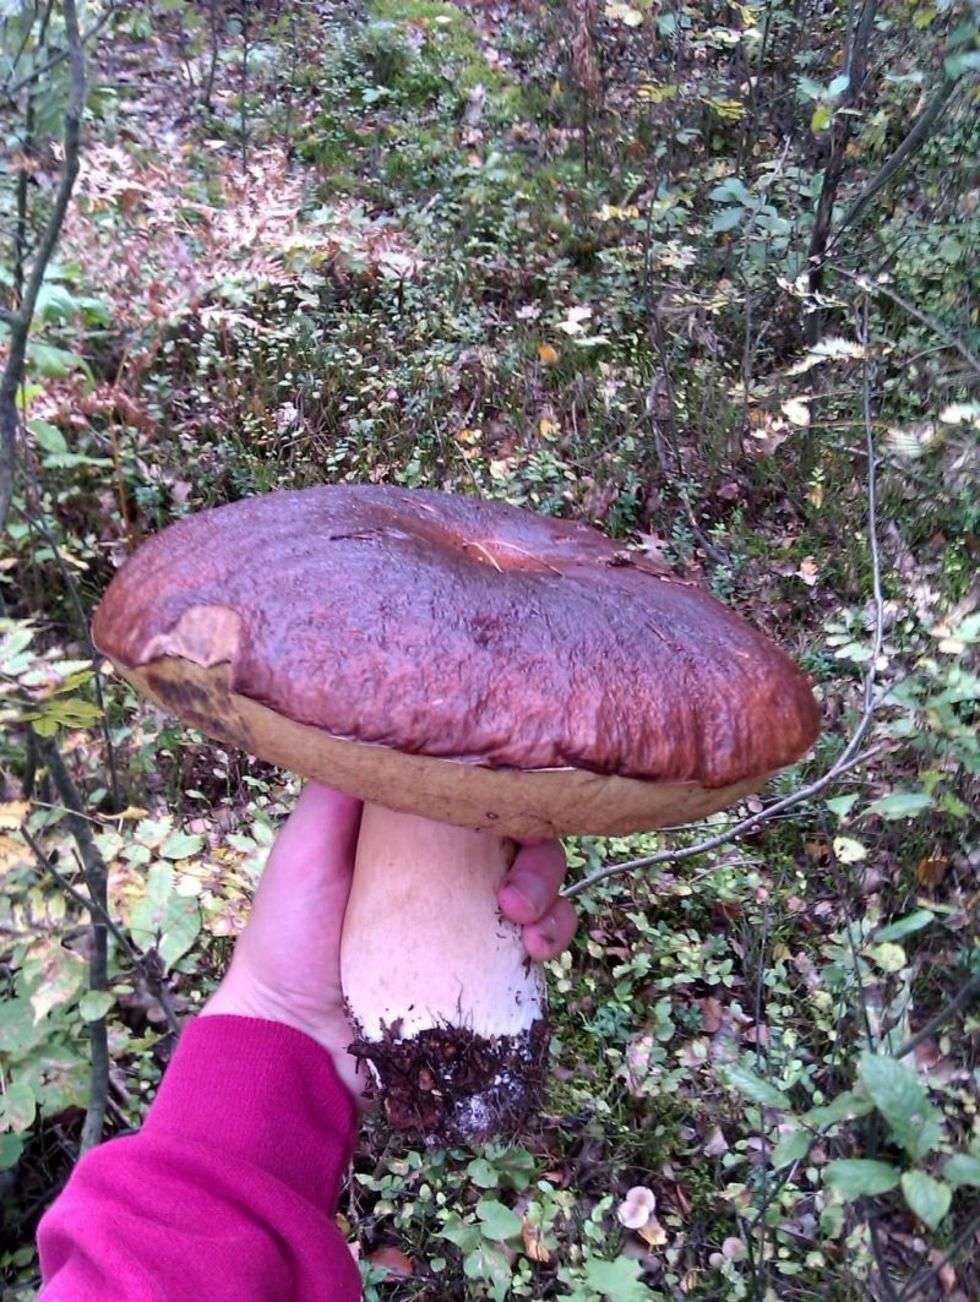  Prawdziwka znalazlem w lasach w okolicy Lezajska. Jego waga to 1 kg , czapka o średnicy 26 cm. Pozdrawiam i zapraszam na Podkarpacie.